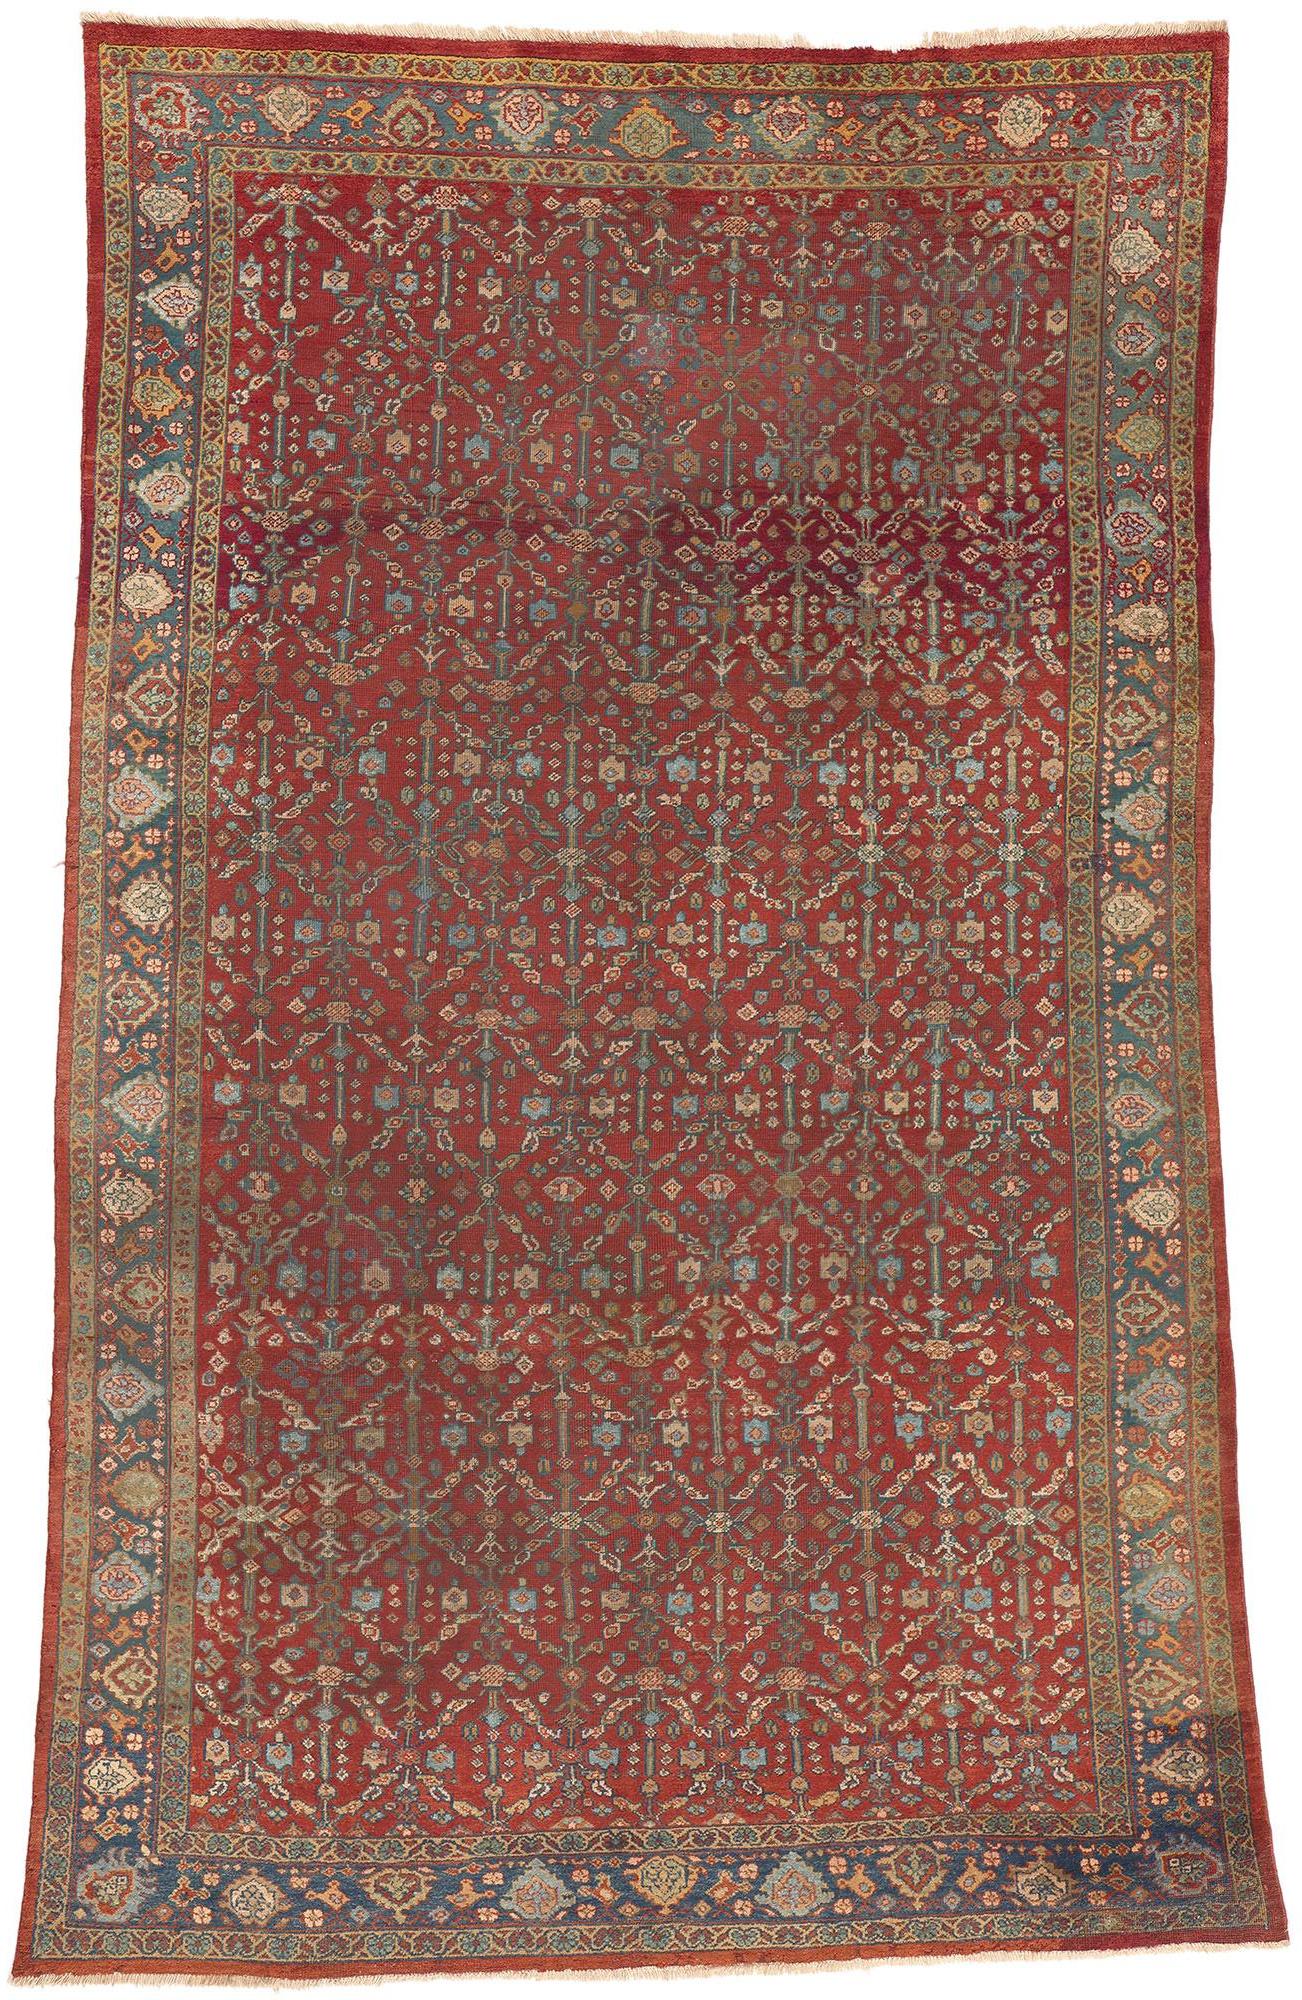 Antiker persischer Mahal-Teppich mit ästhetischem viktorianischen Stil